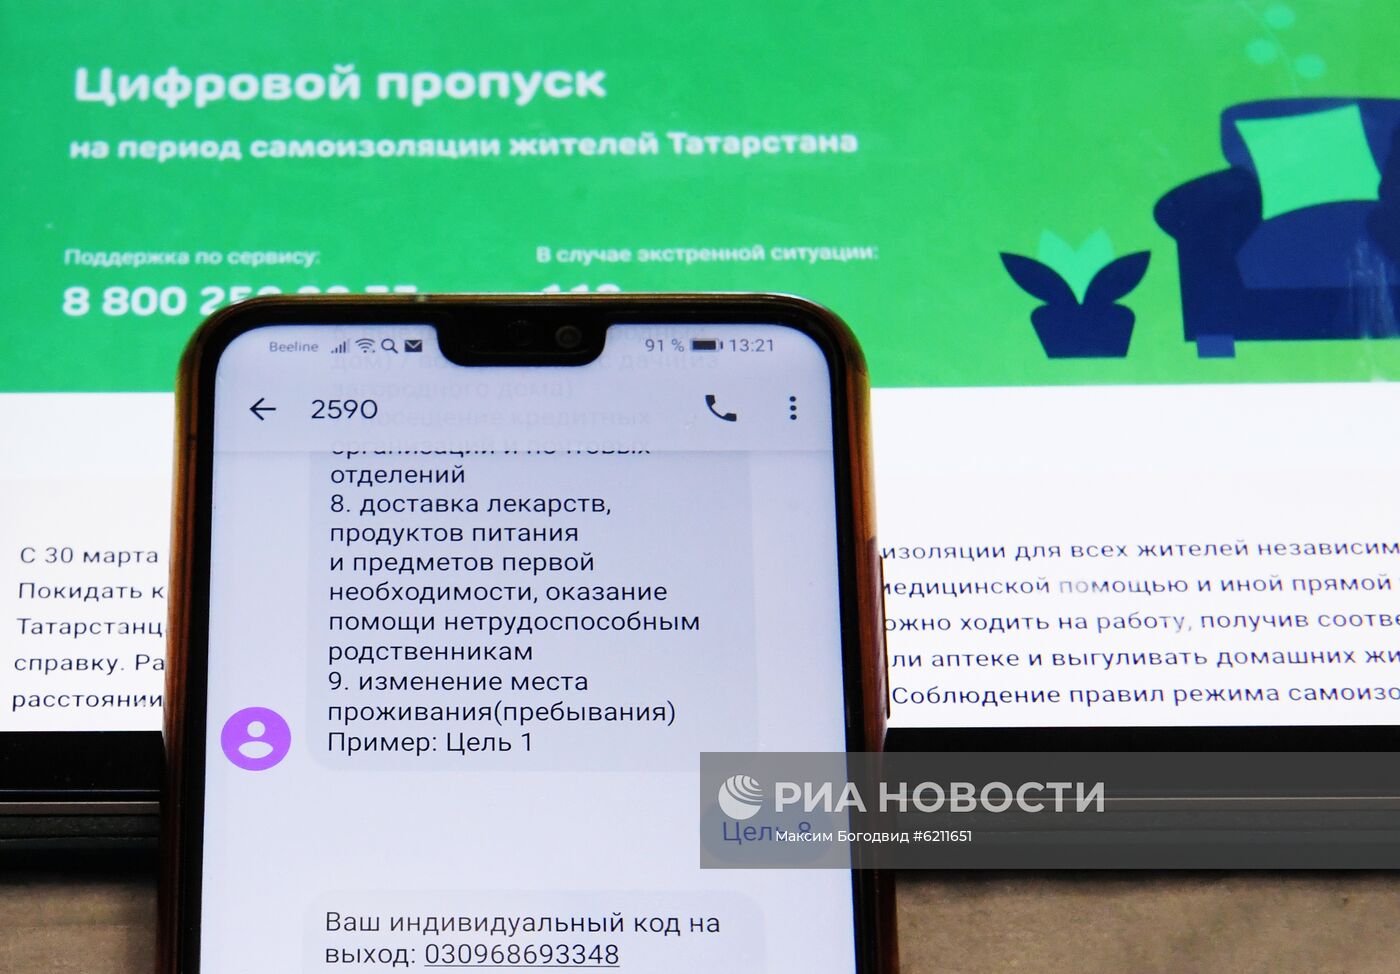 Система получения спецпропусков через смс-сообщения введена в Татарстане